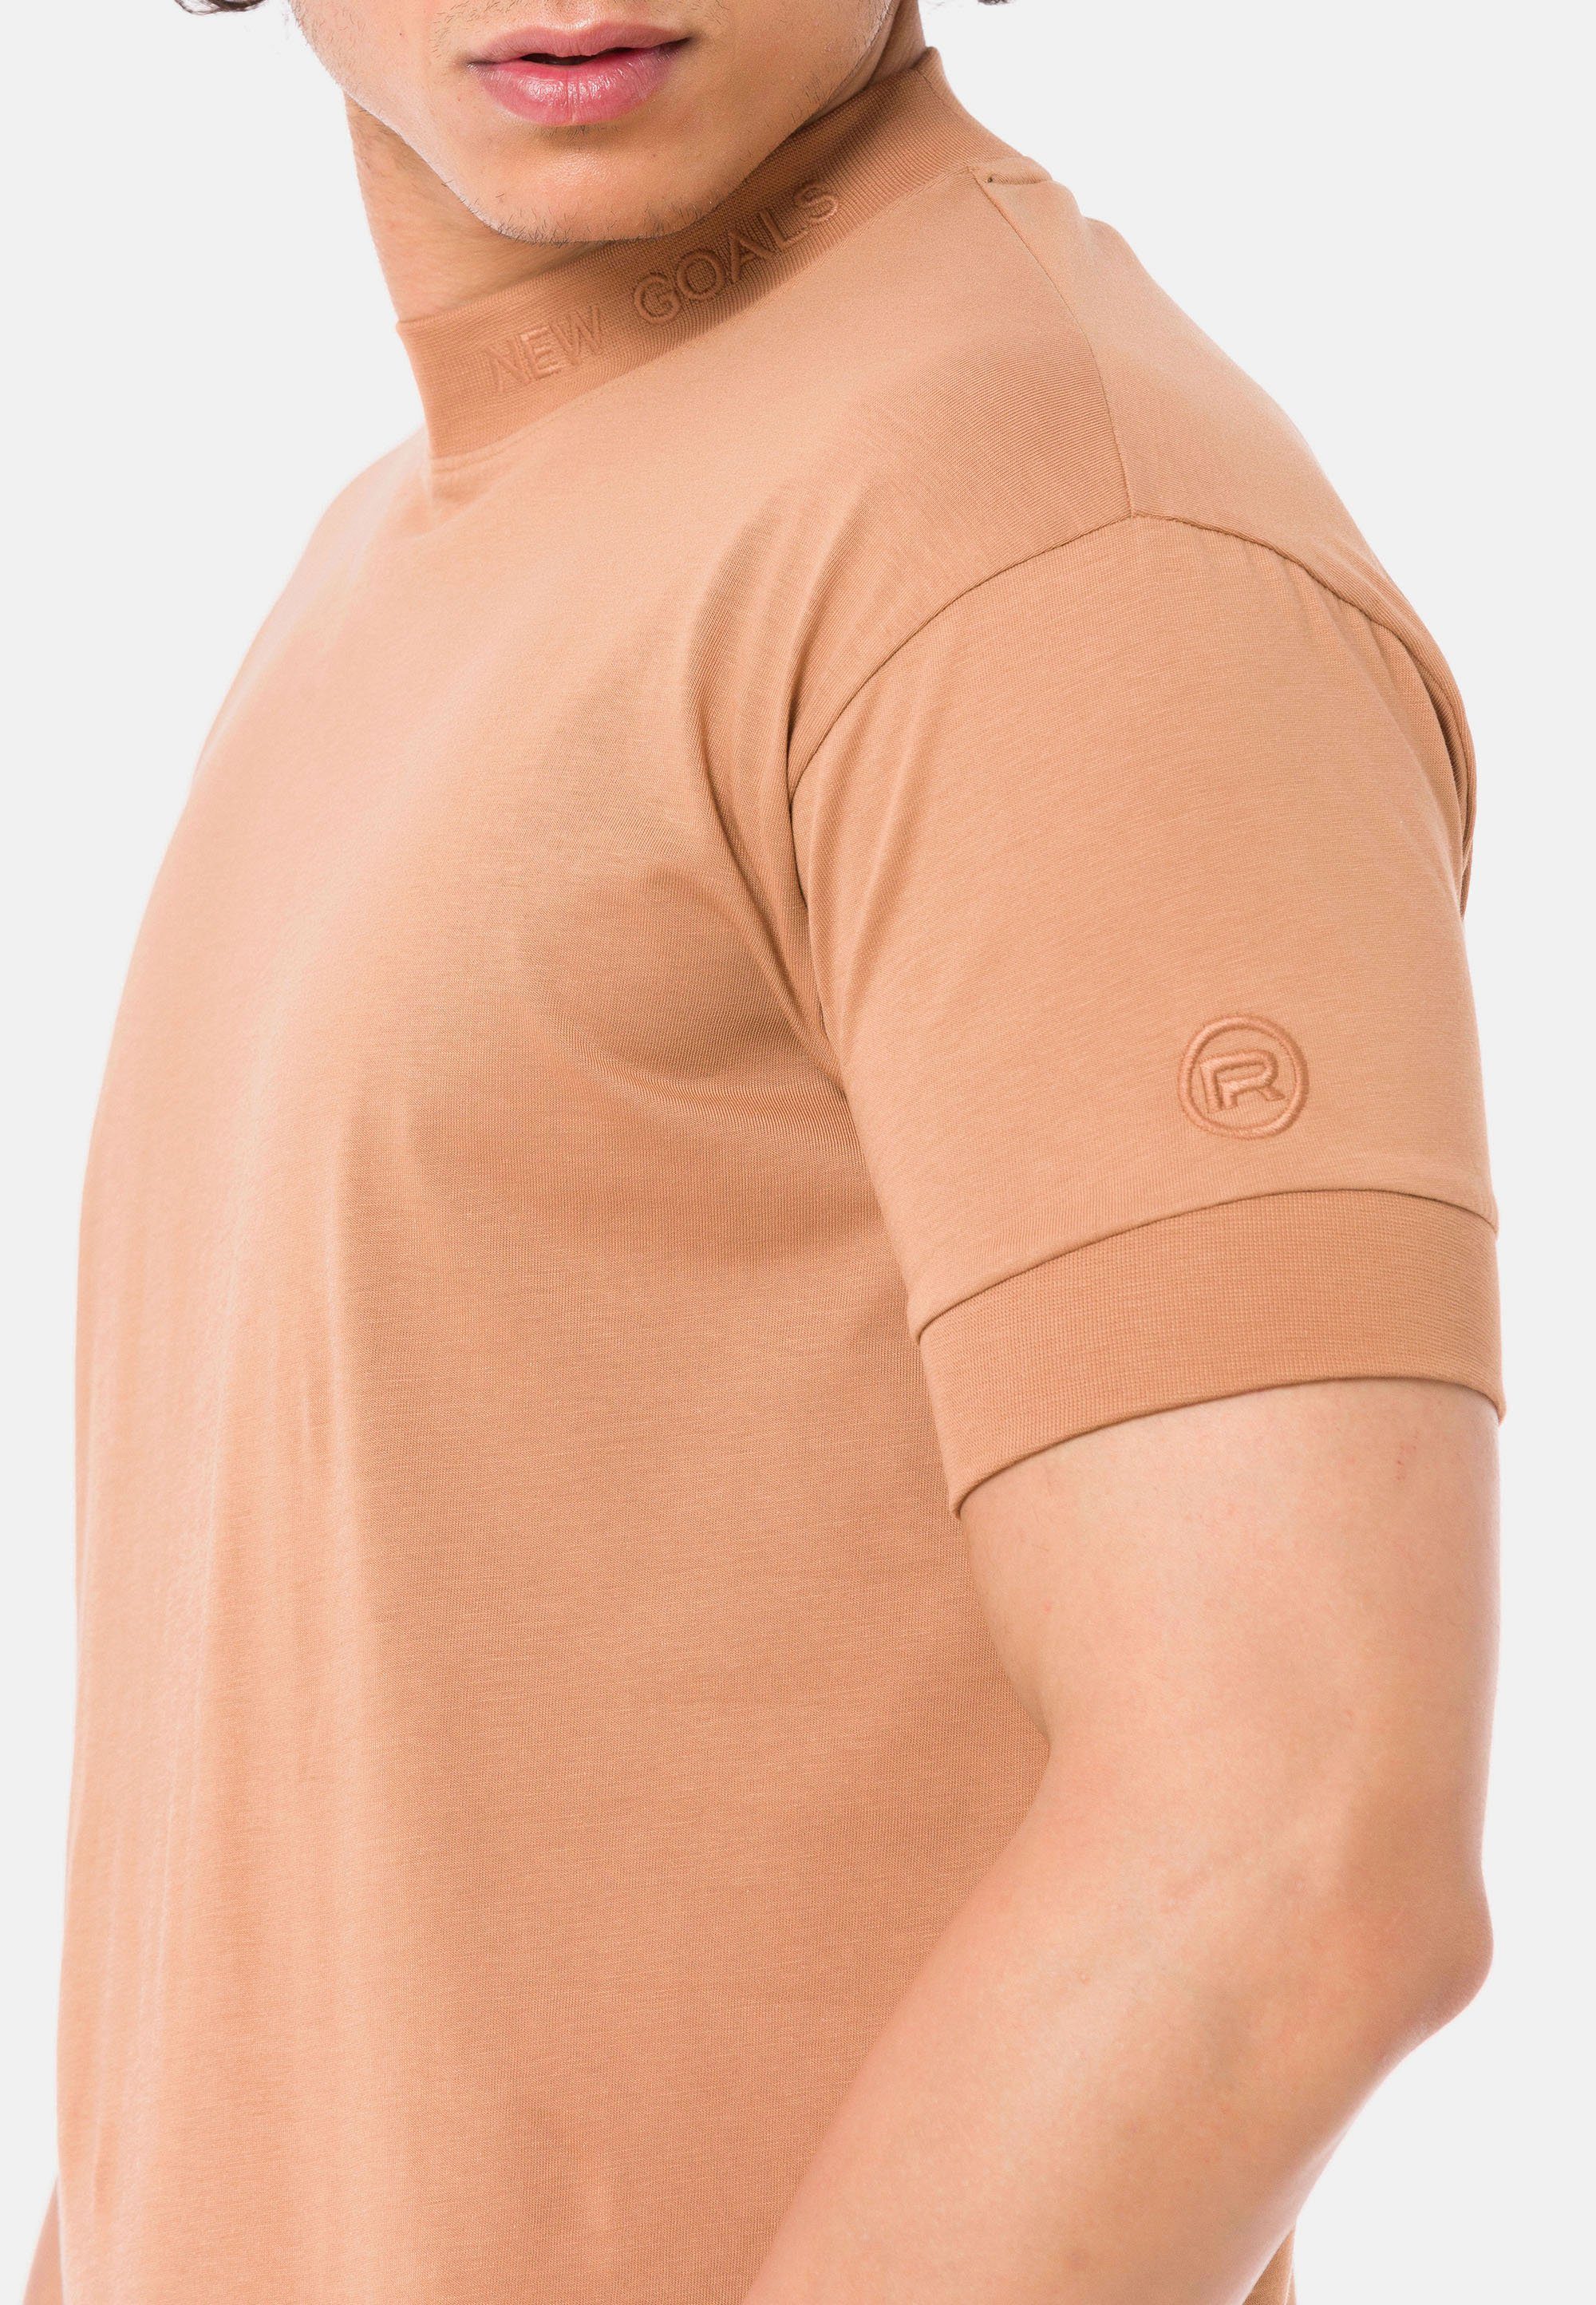 RedBridge T-Shirt Logo-Bestickung Widnes mit braun